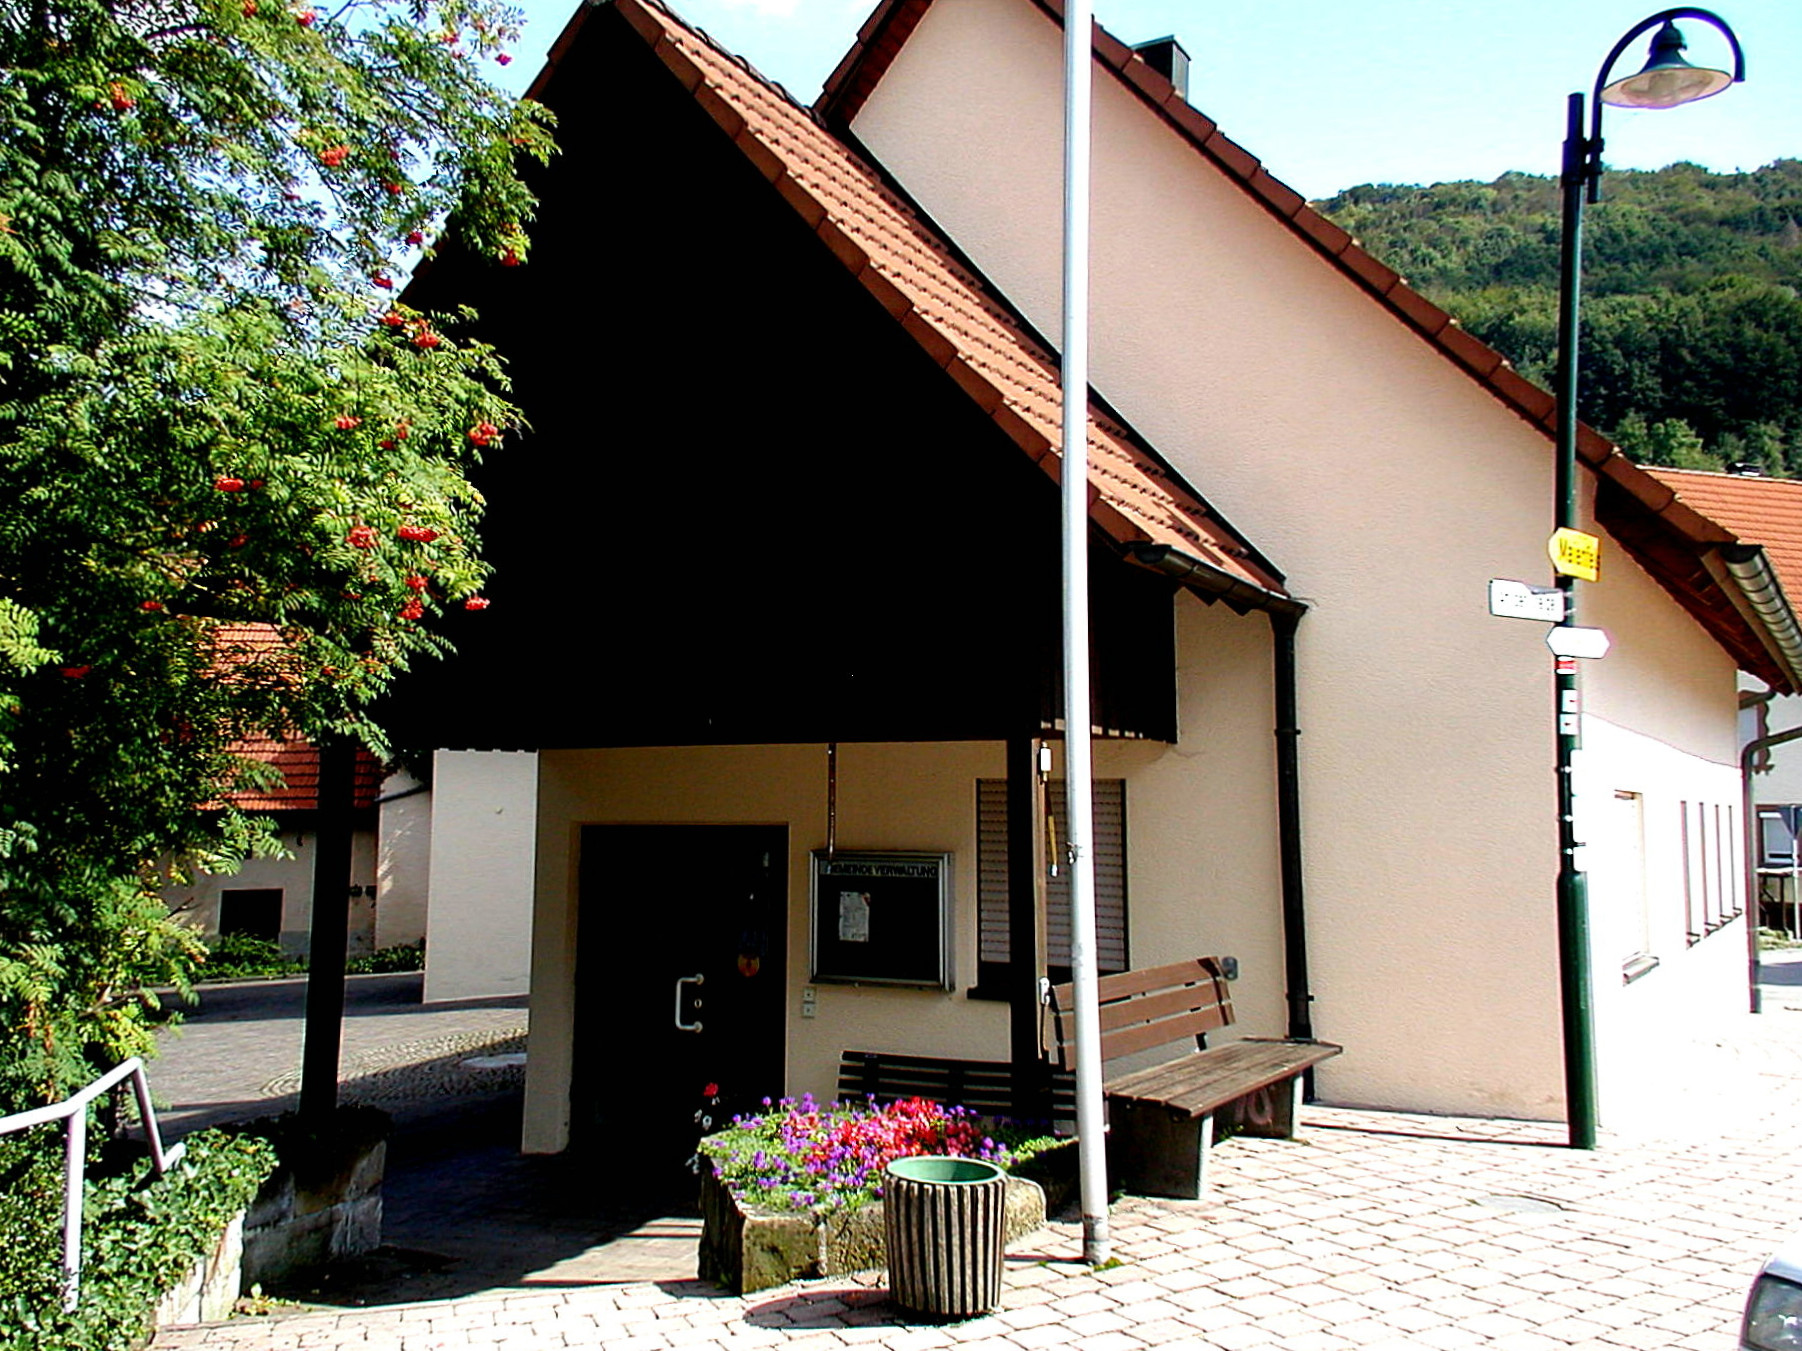  Bürgerhaus Brettach 